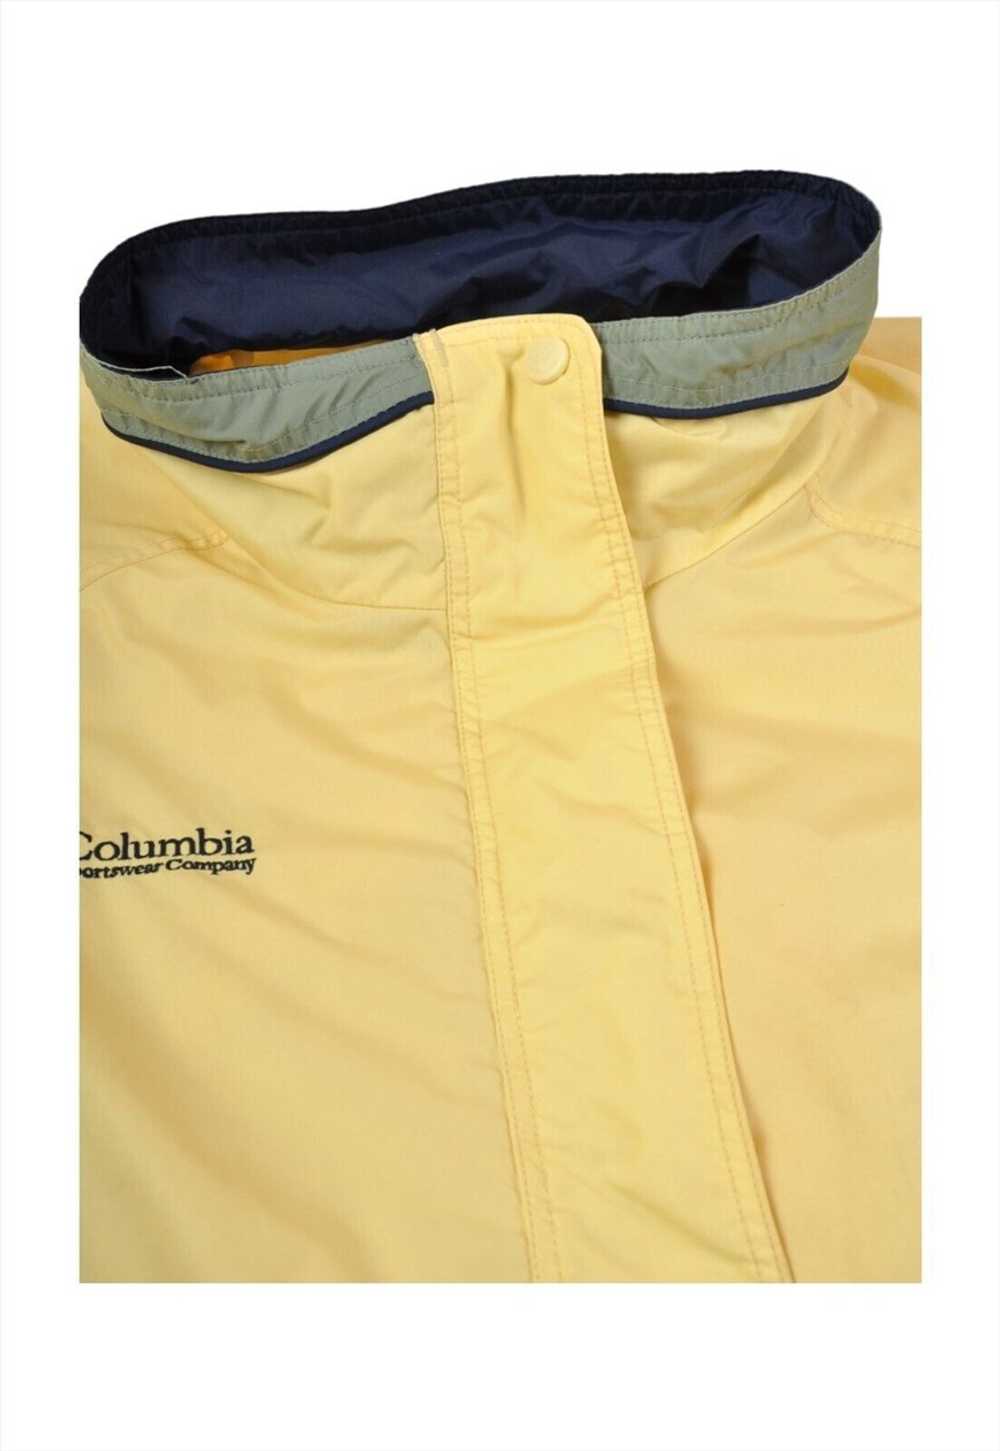 Vintage Columbia Jacket Waterproof Yellow/Navy La… - image 4